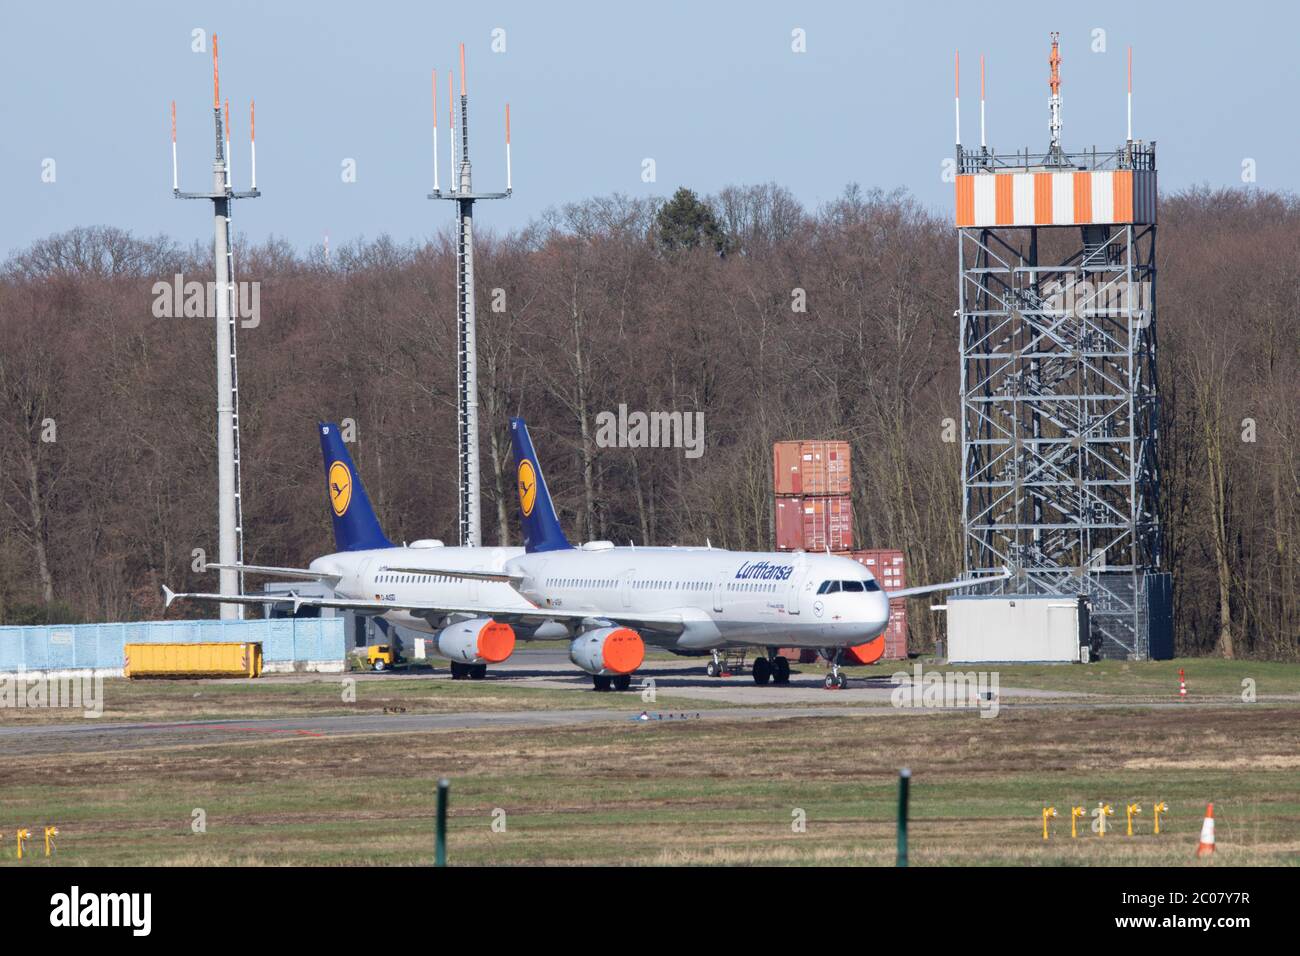 Abgestellte Flugzeuge als Folge der Flugannulierung im Zusammenhang mit der Corona-Krise am Flughafen Köln/Bonn. Köln; 22.03.2020 Stock Photo